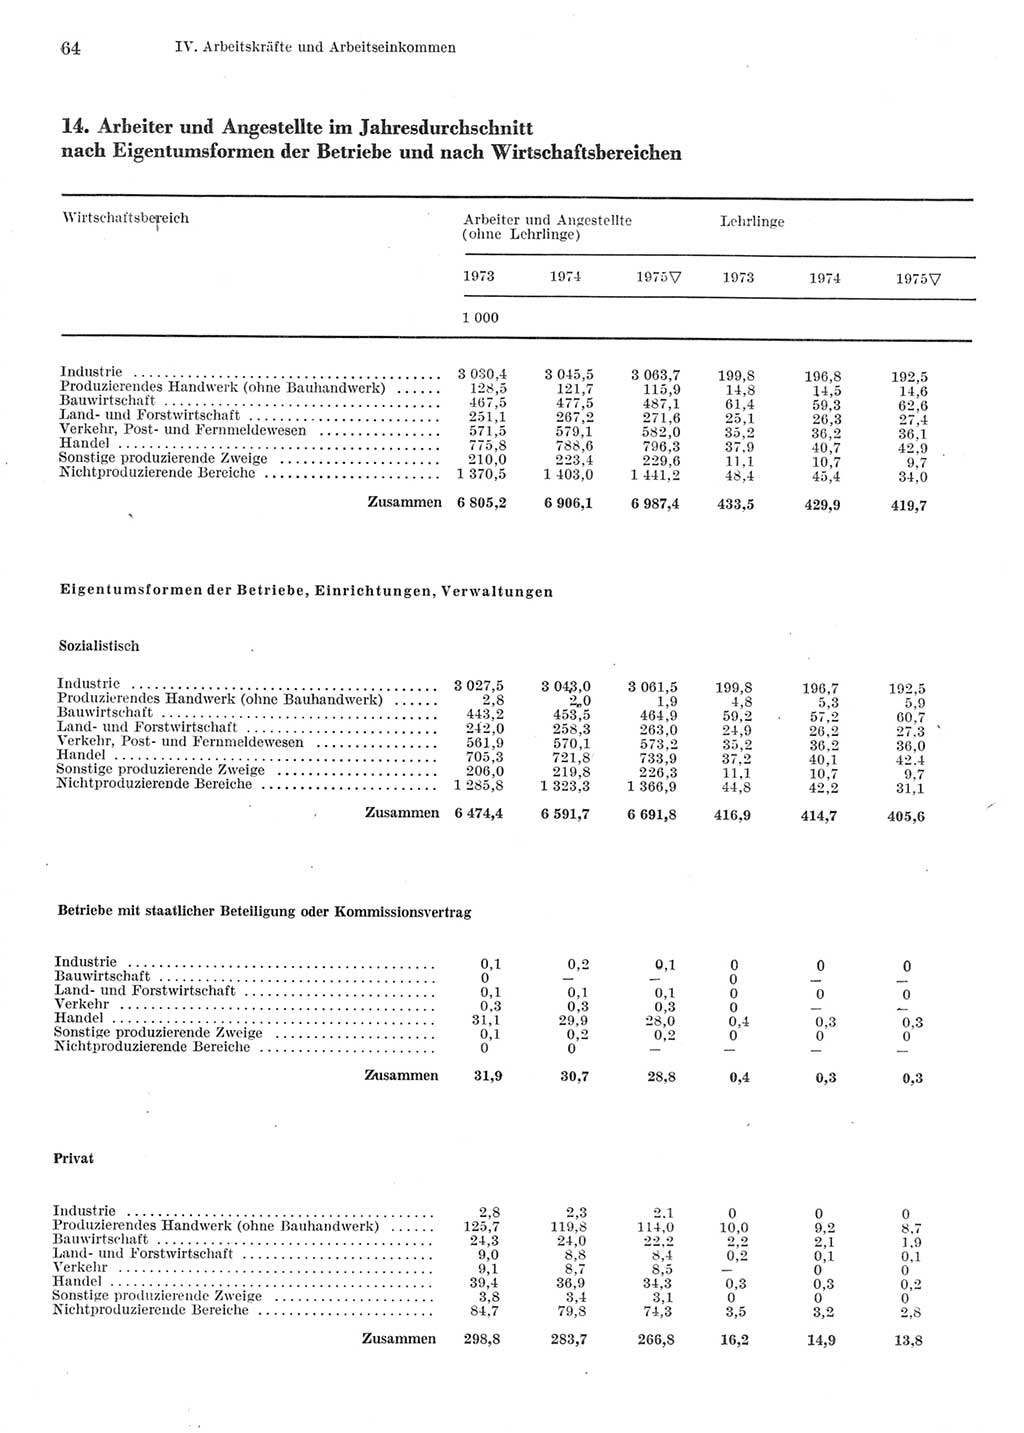 Statistisches Jahrbuch der Deutschen Demokratischen Republik (DDR) 1976, Seite 64 (Stat. Jb. DDR 1976, S. 64)